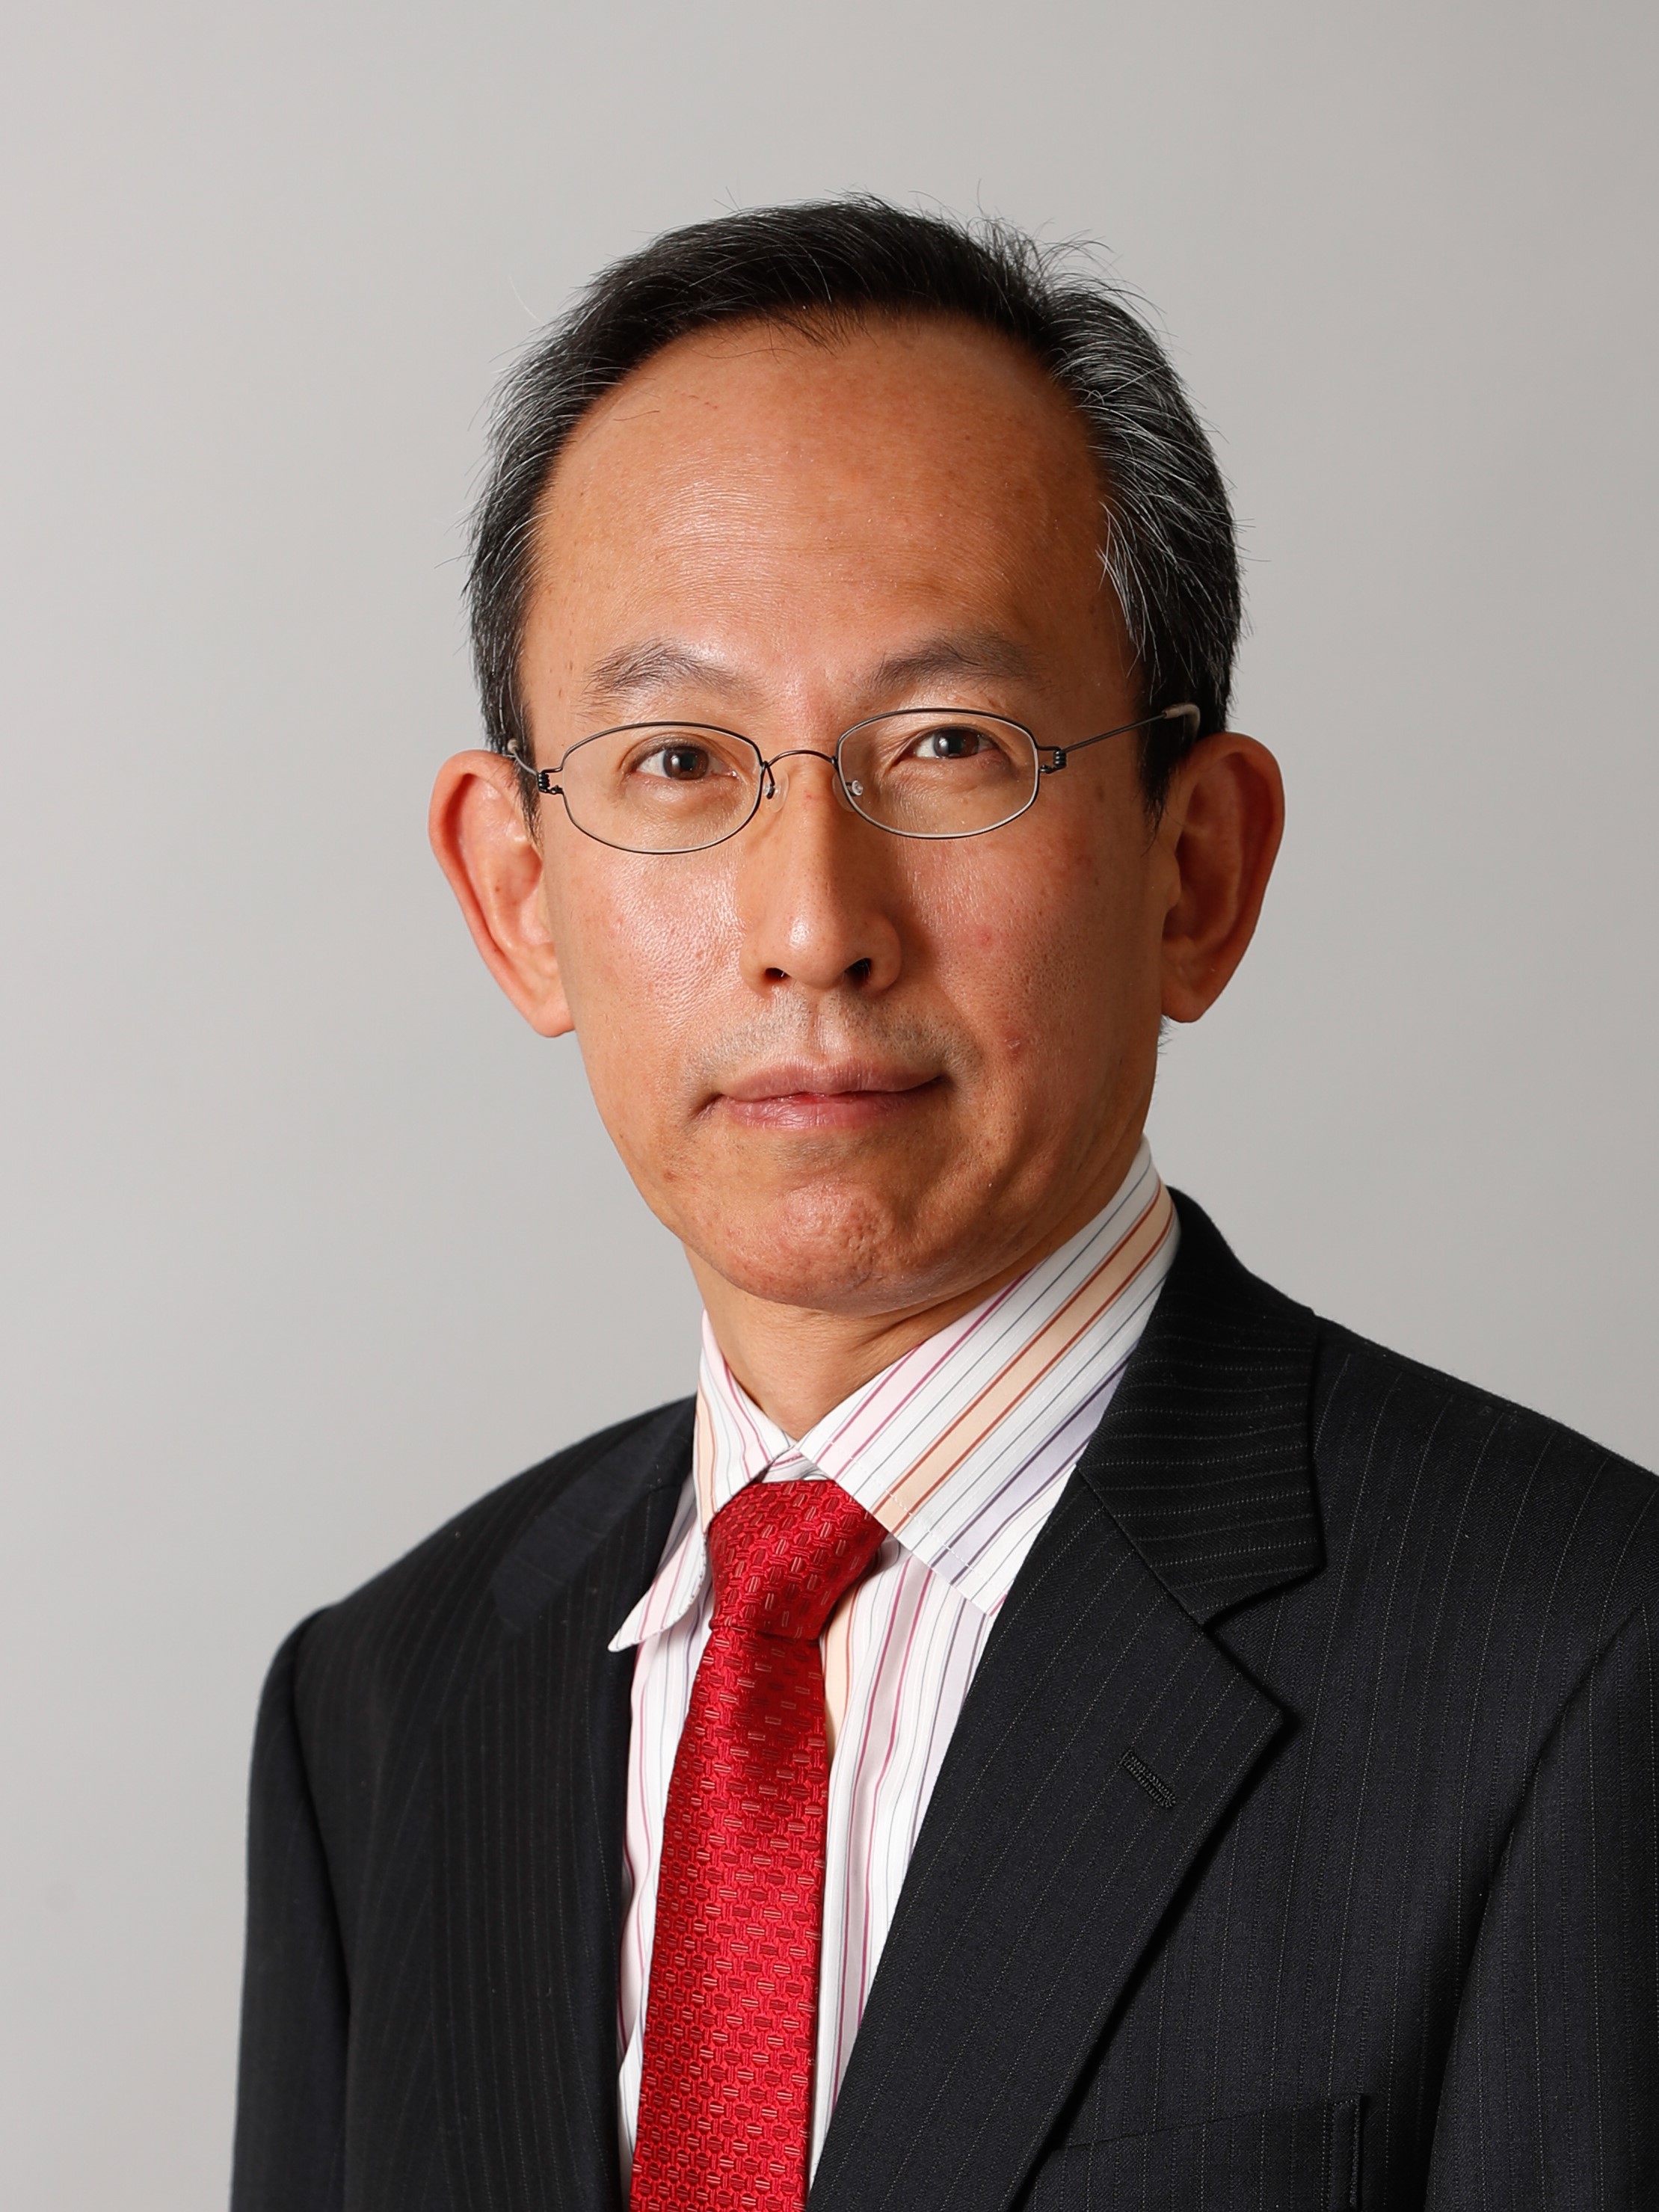 Masaru Kitsuregawa